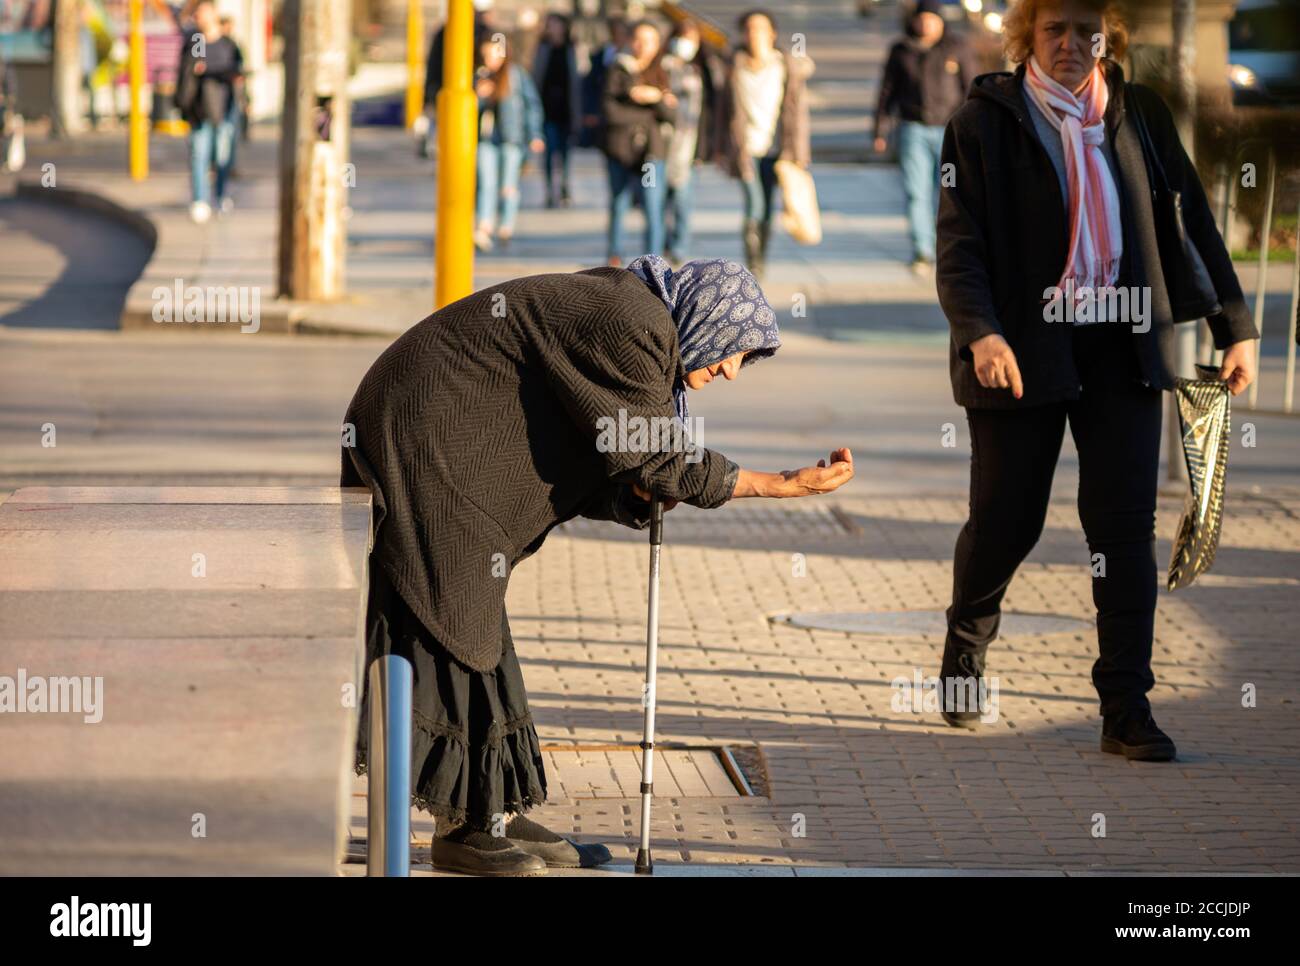 Vieille femme mendiante femme âgée portant des vêtements noirs et tenant un bâton est la mendicité de l'argent dans les rues de Sofia Bulgarie Banque D'Images